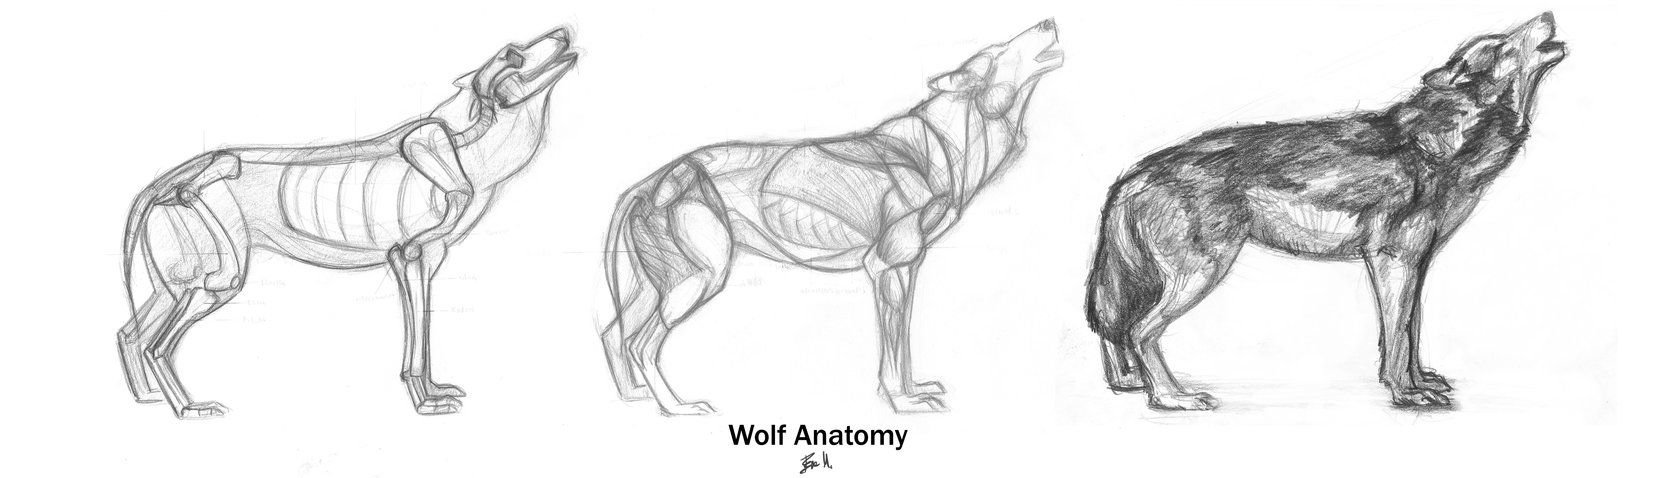 Волк анатомия сбоку